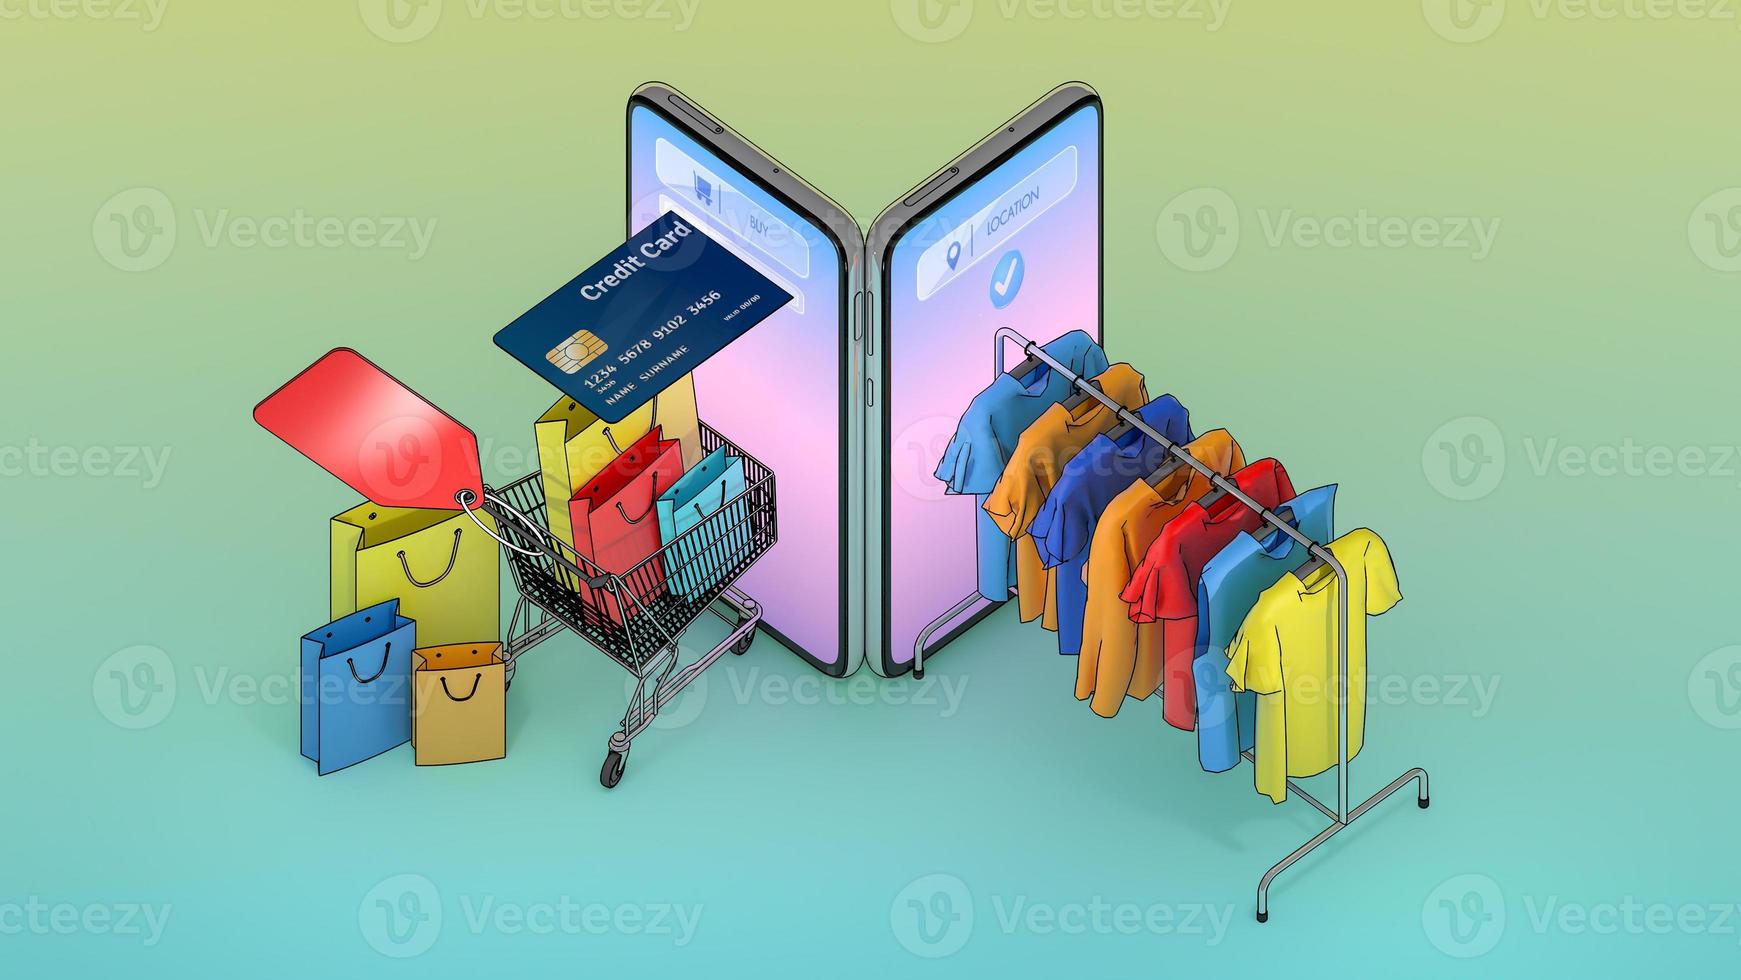 Viele Einkaufstaschen und Preisschilder in einem Einkaufswagen und Kleidung auf einem Kleiderbügel erschienen auf dem Bildschirm des Smartphones., Online-Shopping oder Shopaholic-Konzept.,3D-Illustration mit Objekt-Beschneidungspfad. foto